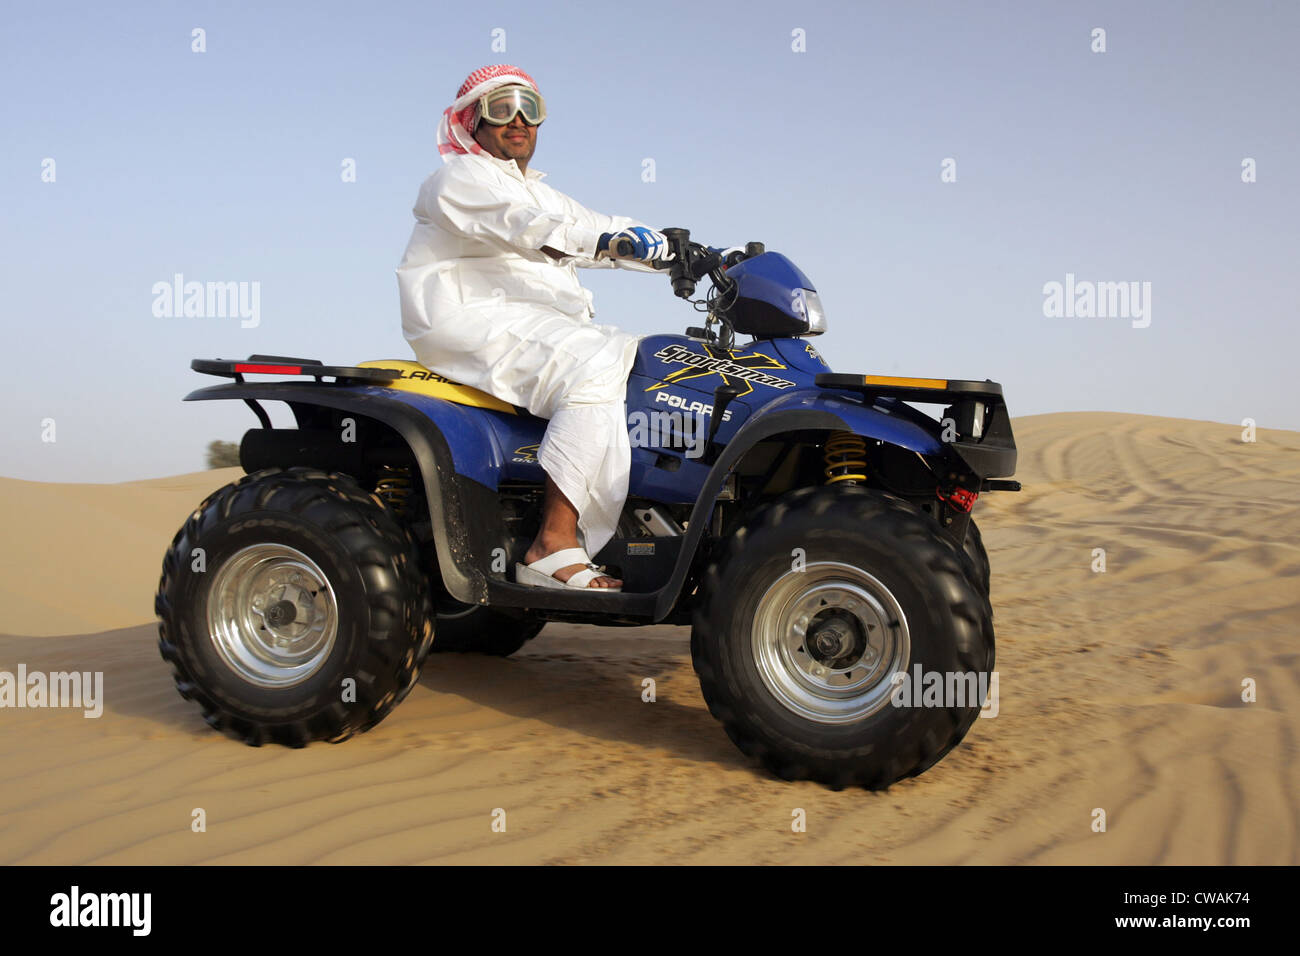 Dubai, quad riders in the desert Stock Photo